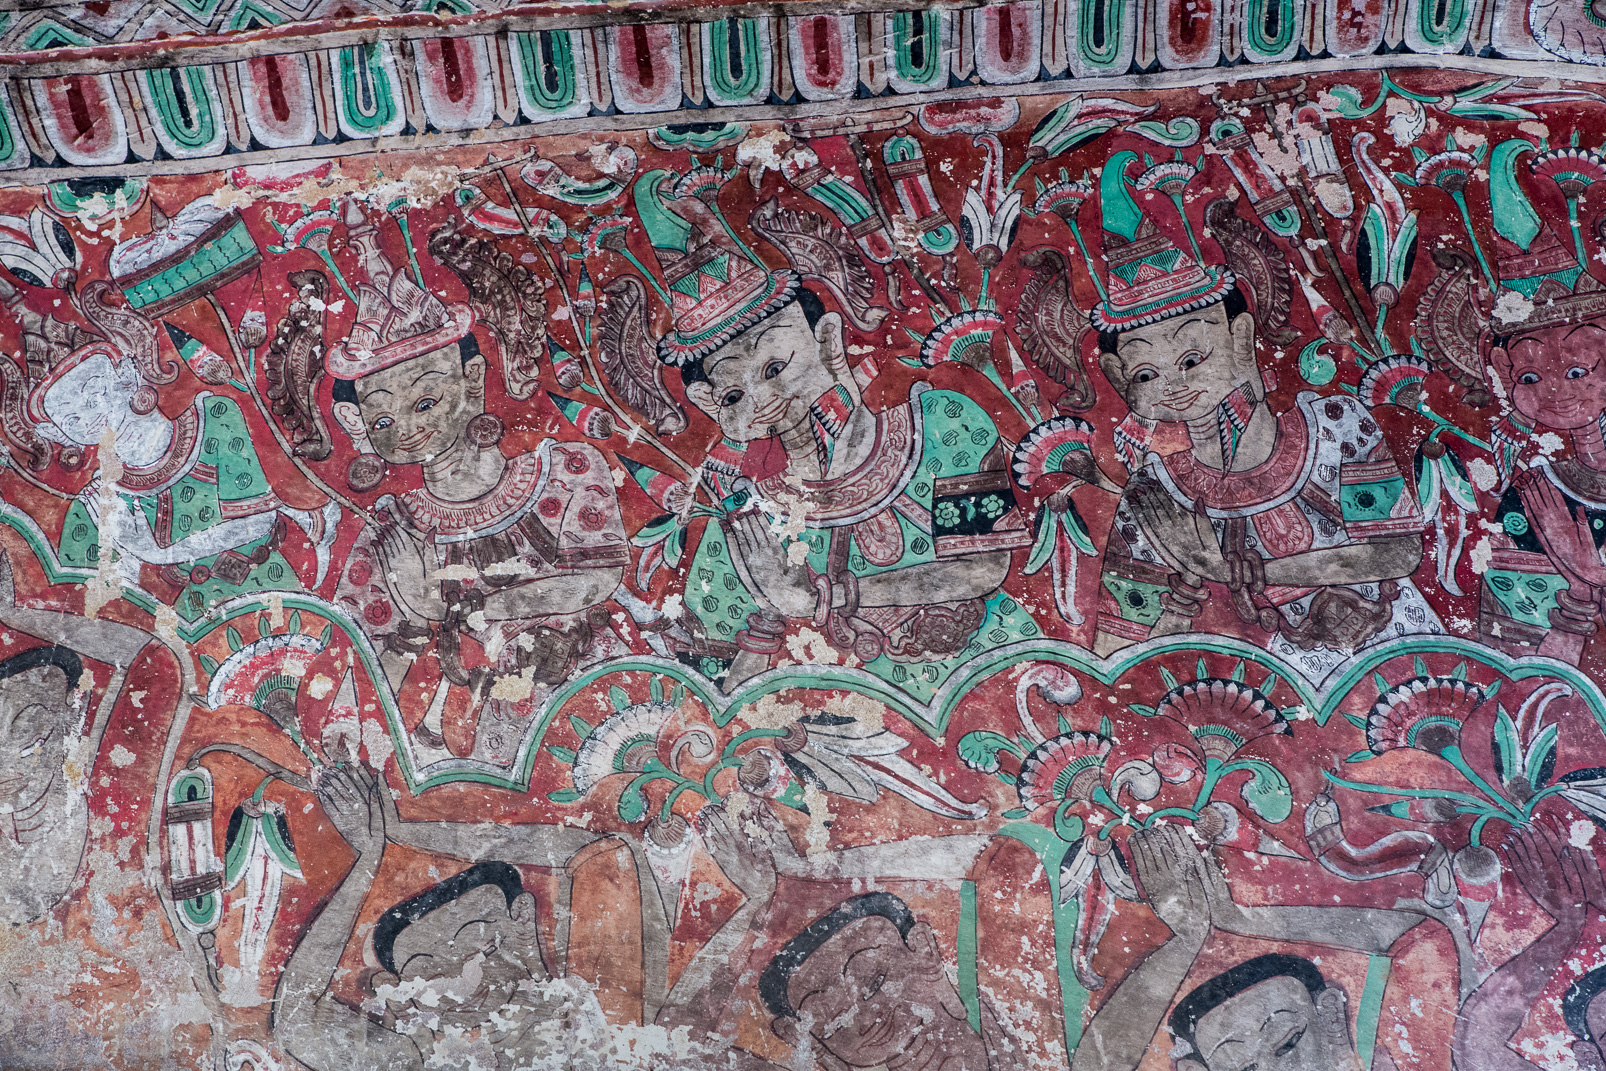 Les grottes de Hpowintaung contiennent  de magnifiques peintures, du XIVe au XVIIe siècle. De style Nyaung-yan, on n’en voit nulle part ailleurs. Elles présentent des scènes royales ou liées au Bouddhisme.